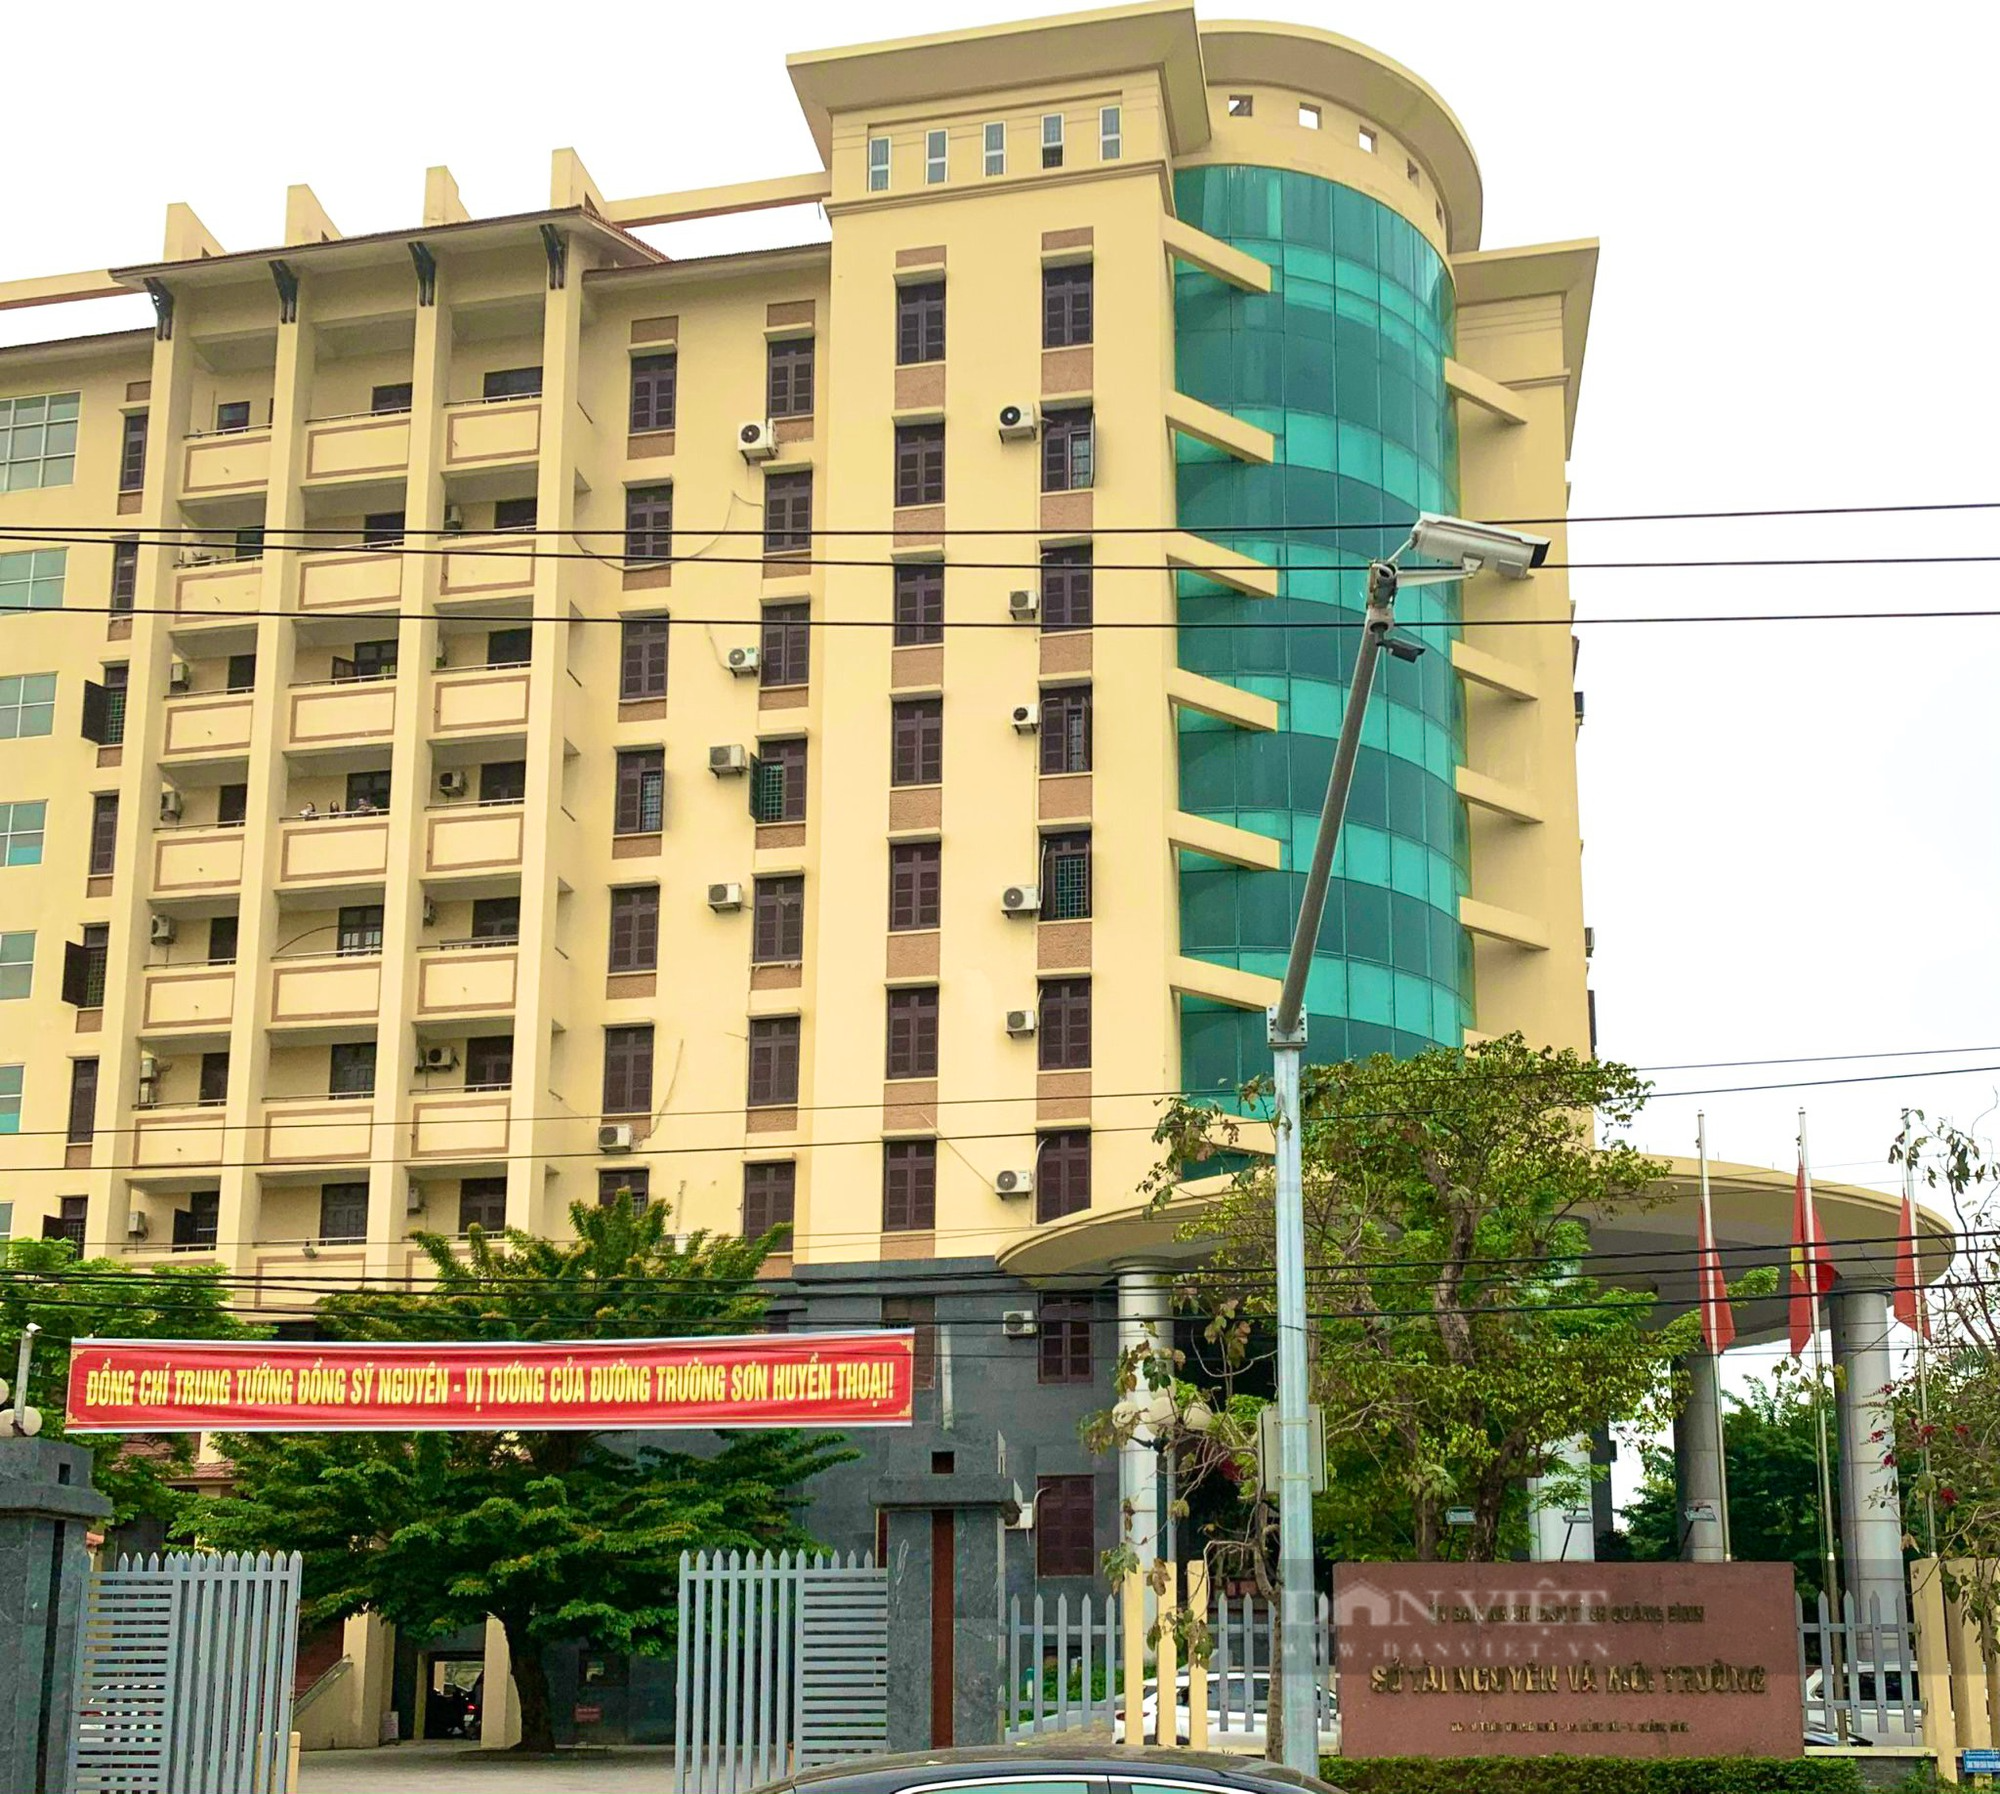 Một cán bộ Sở Tài nguyên và Môi trường tỉnh Quảng Bình bị khởi tố về tội đánh bạc - Ảnh 1.